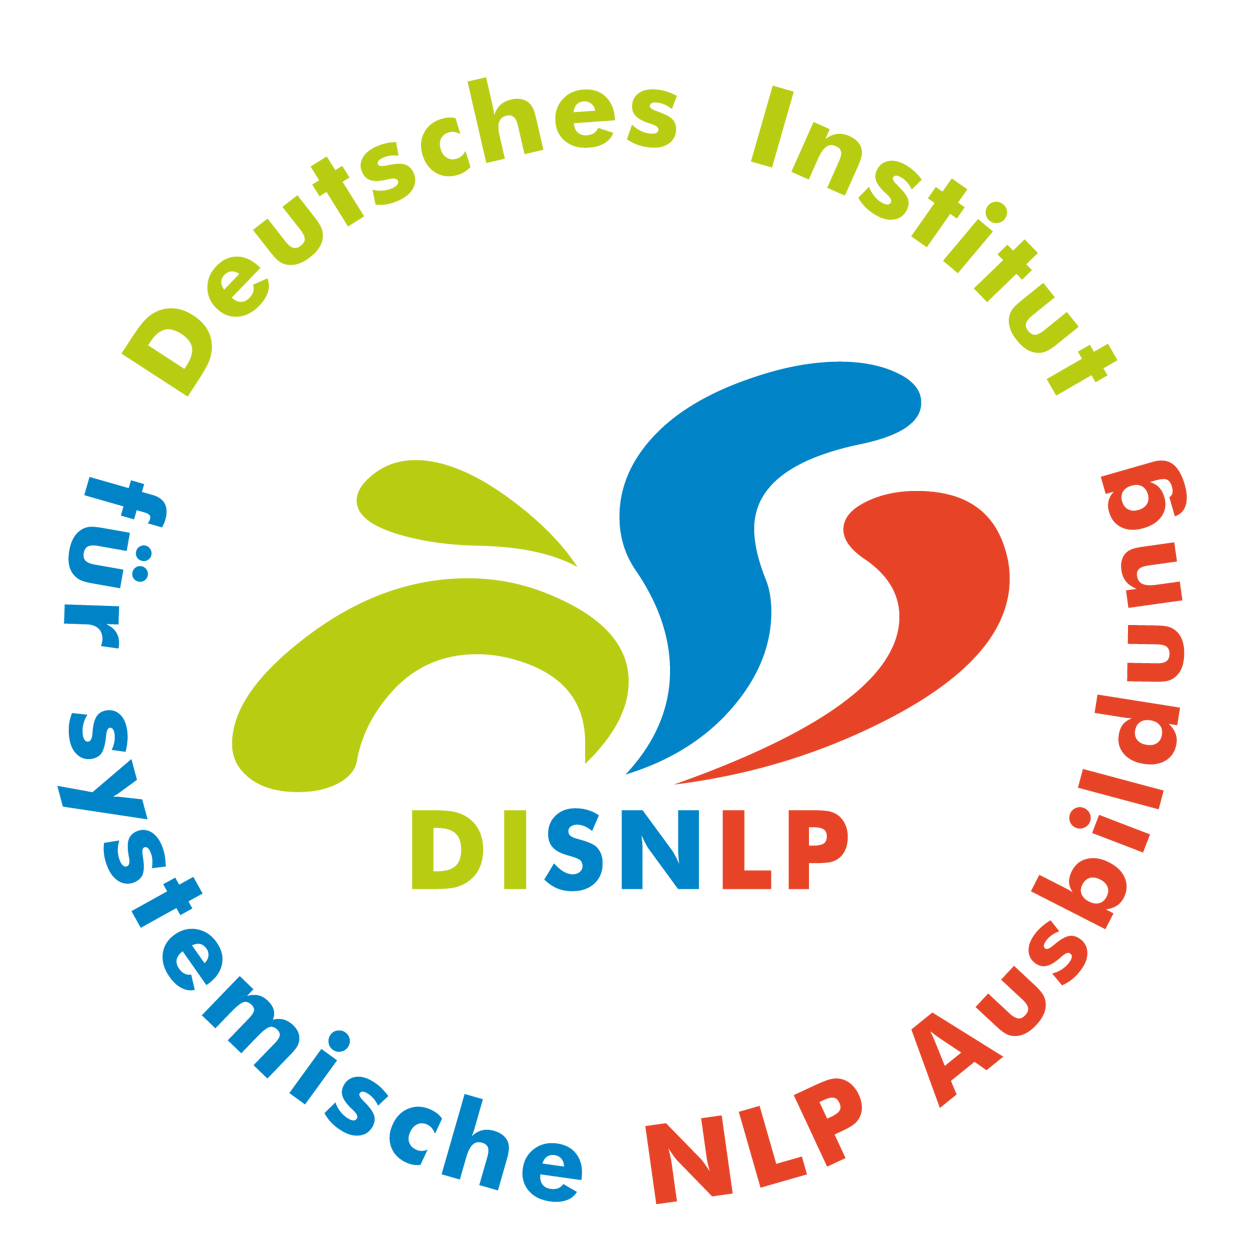 Seminar Selbstbewusstsein, Selbstvertrauen, Selbstwert, Selbstsicherheit stärken Rosenheim Oberbayern mit NLP Coaching Kurs für mehr Selbstbewusstsein